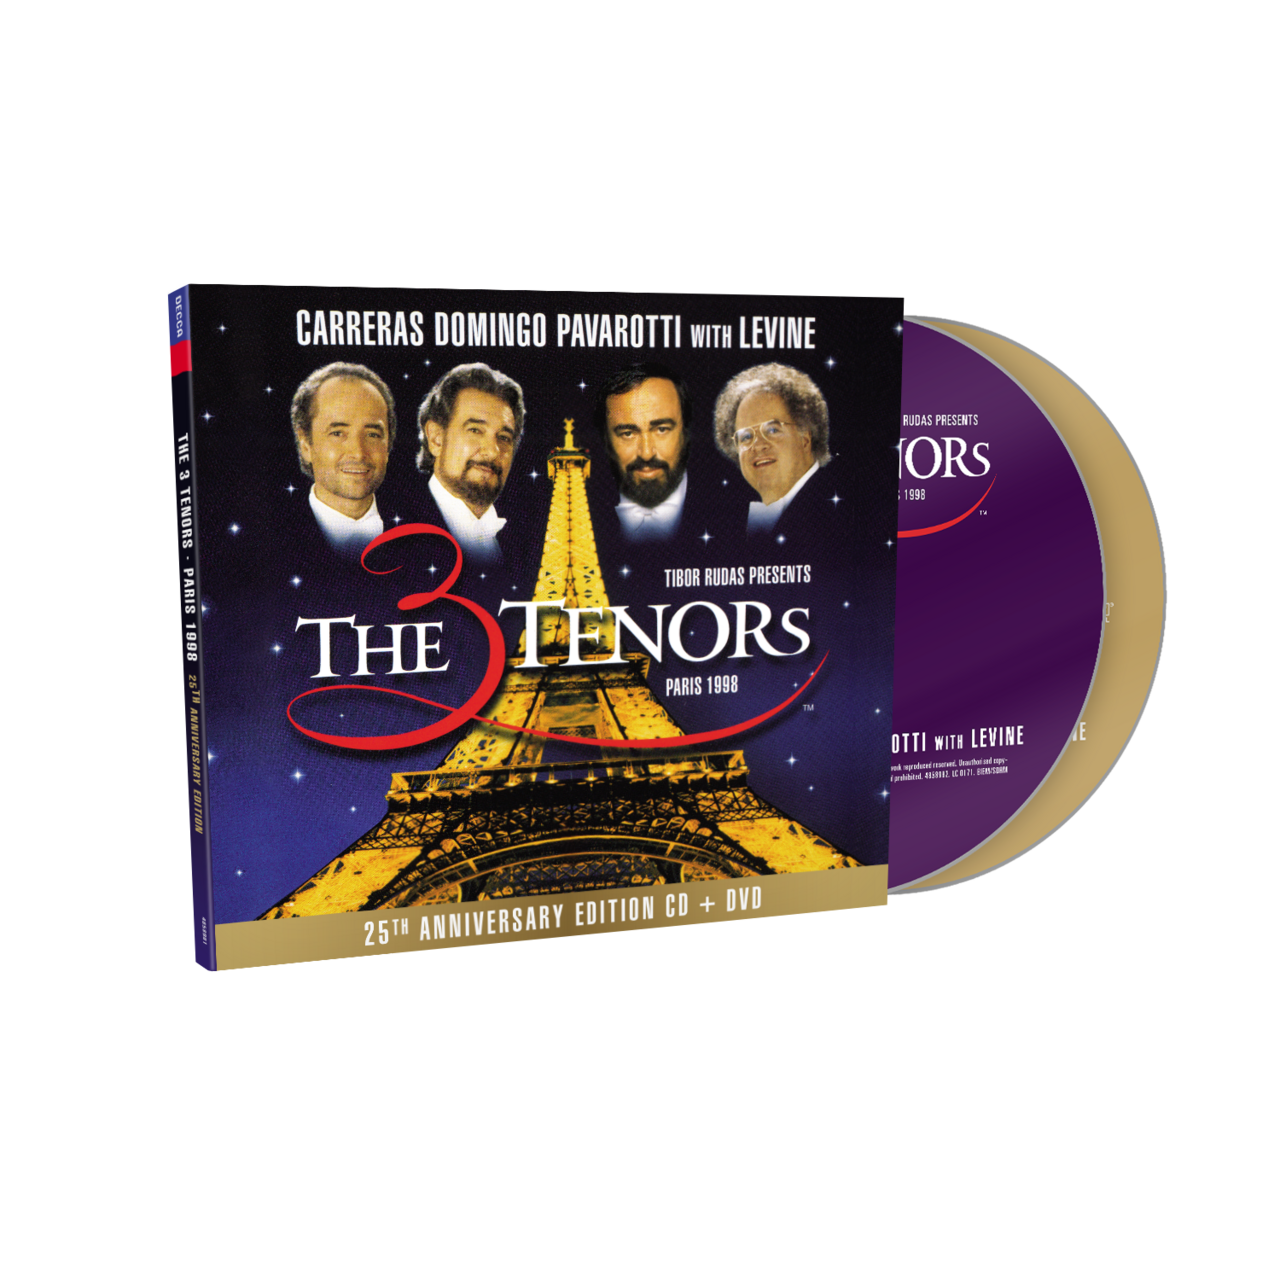 Luciano Pavarotti - The Tenors – Paris 1998: 2CD